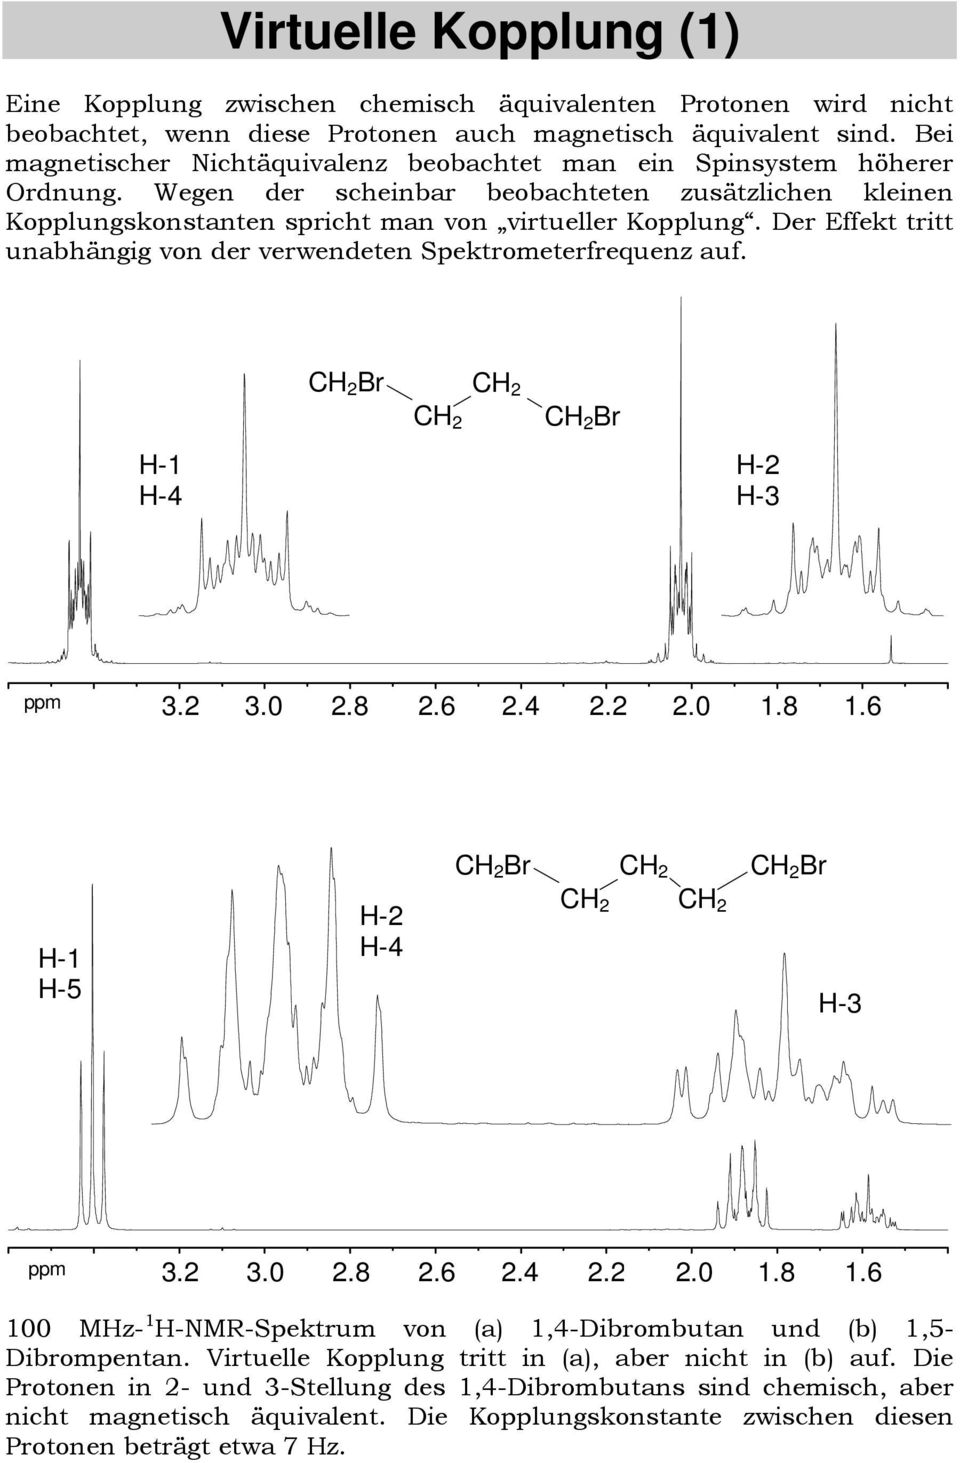 Der Effekt tritt unabhängig von der verwendeten Spektrometerfrequenz auf. Br Br - - - -..0.8.6...0.8.6 - -5 - - Br Br -..0.8.6...0.8.6 00 Mz- -NMR-Spektrum von (a),-dibrombutan und (b),5- Dibrompentan.